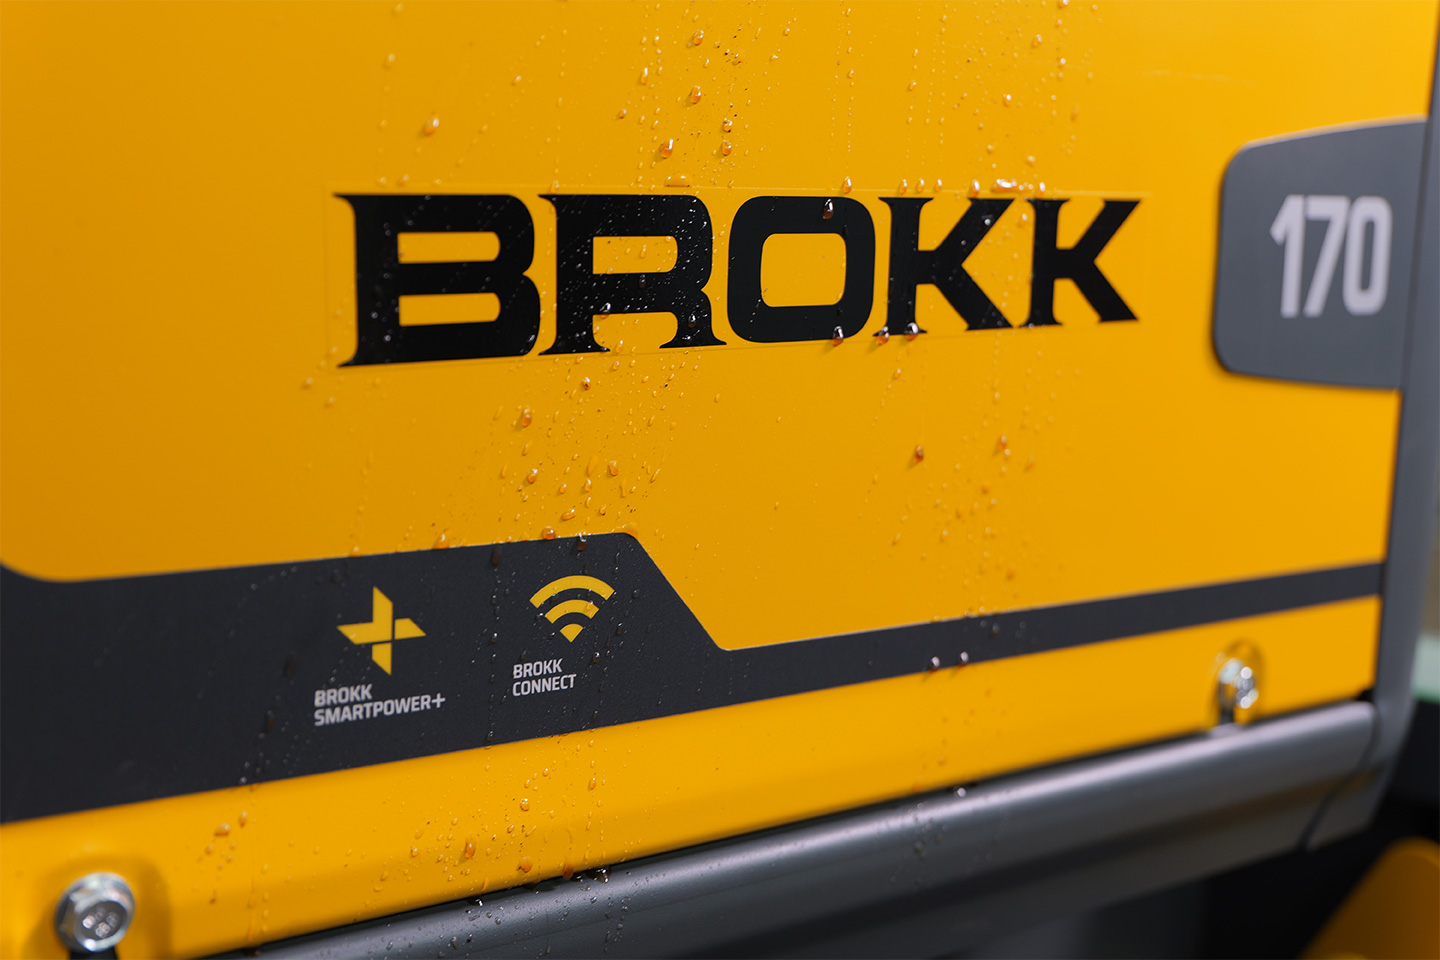 Brokk 170 with SmartPower+